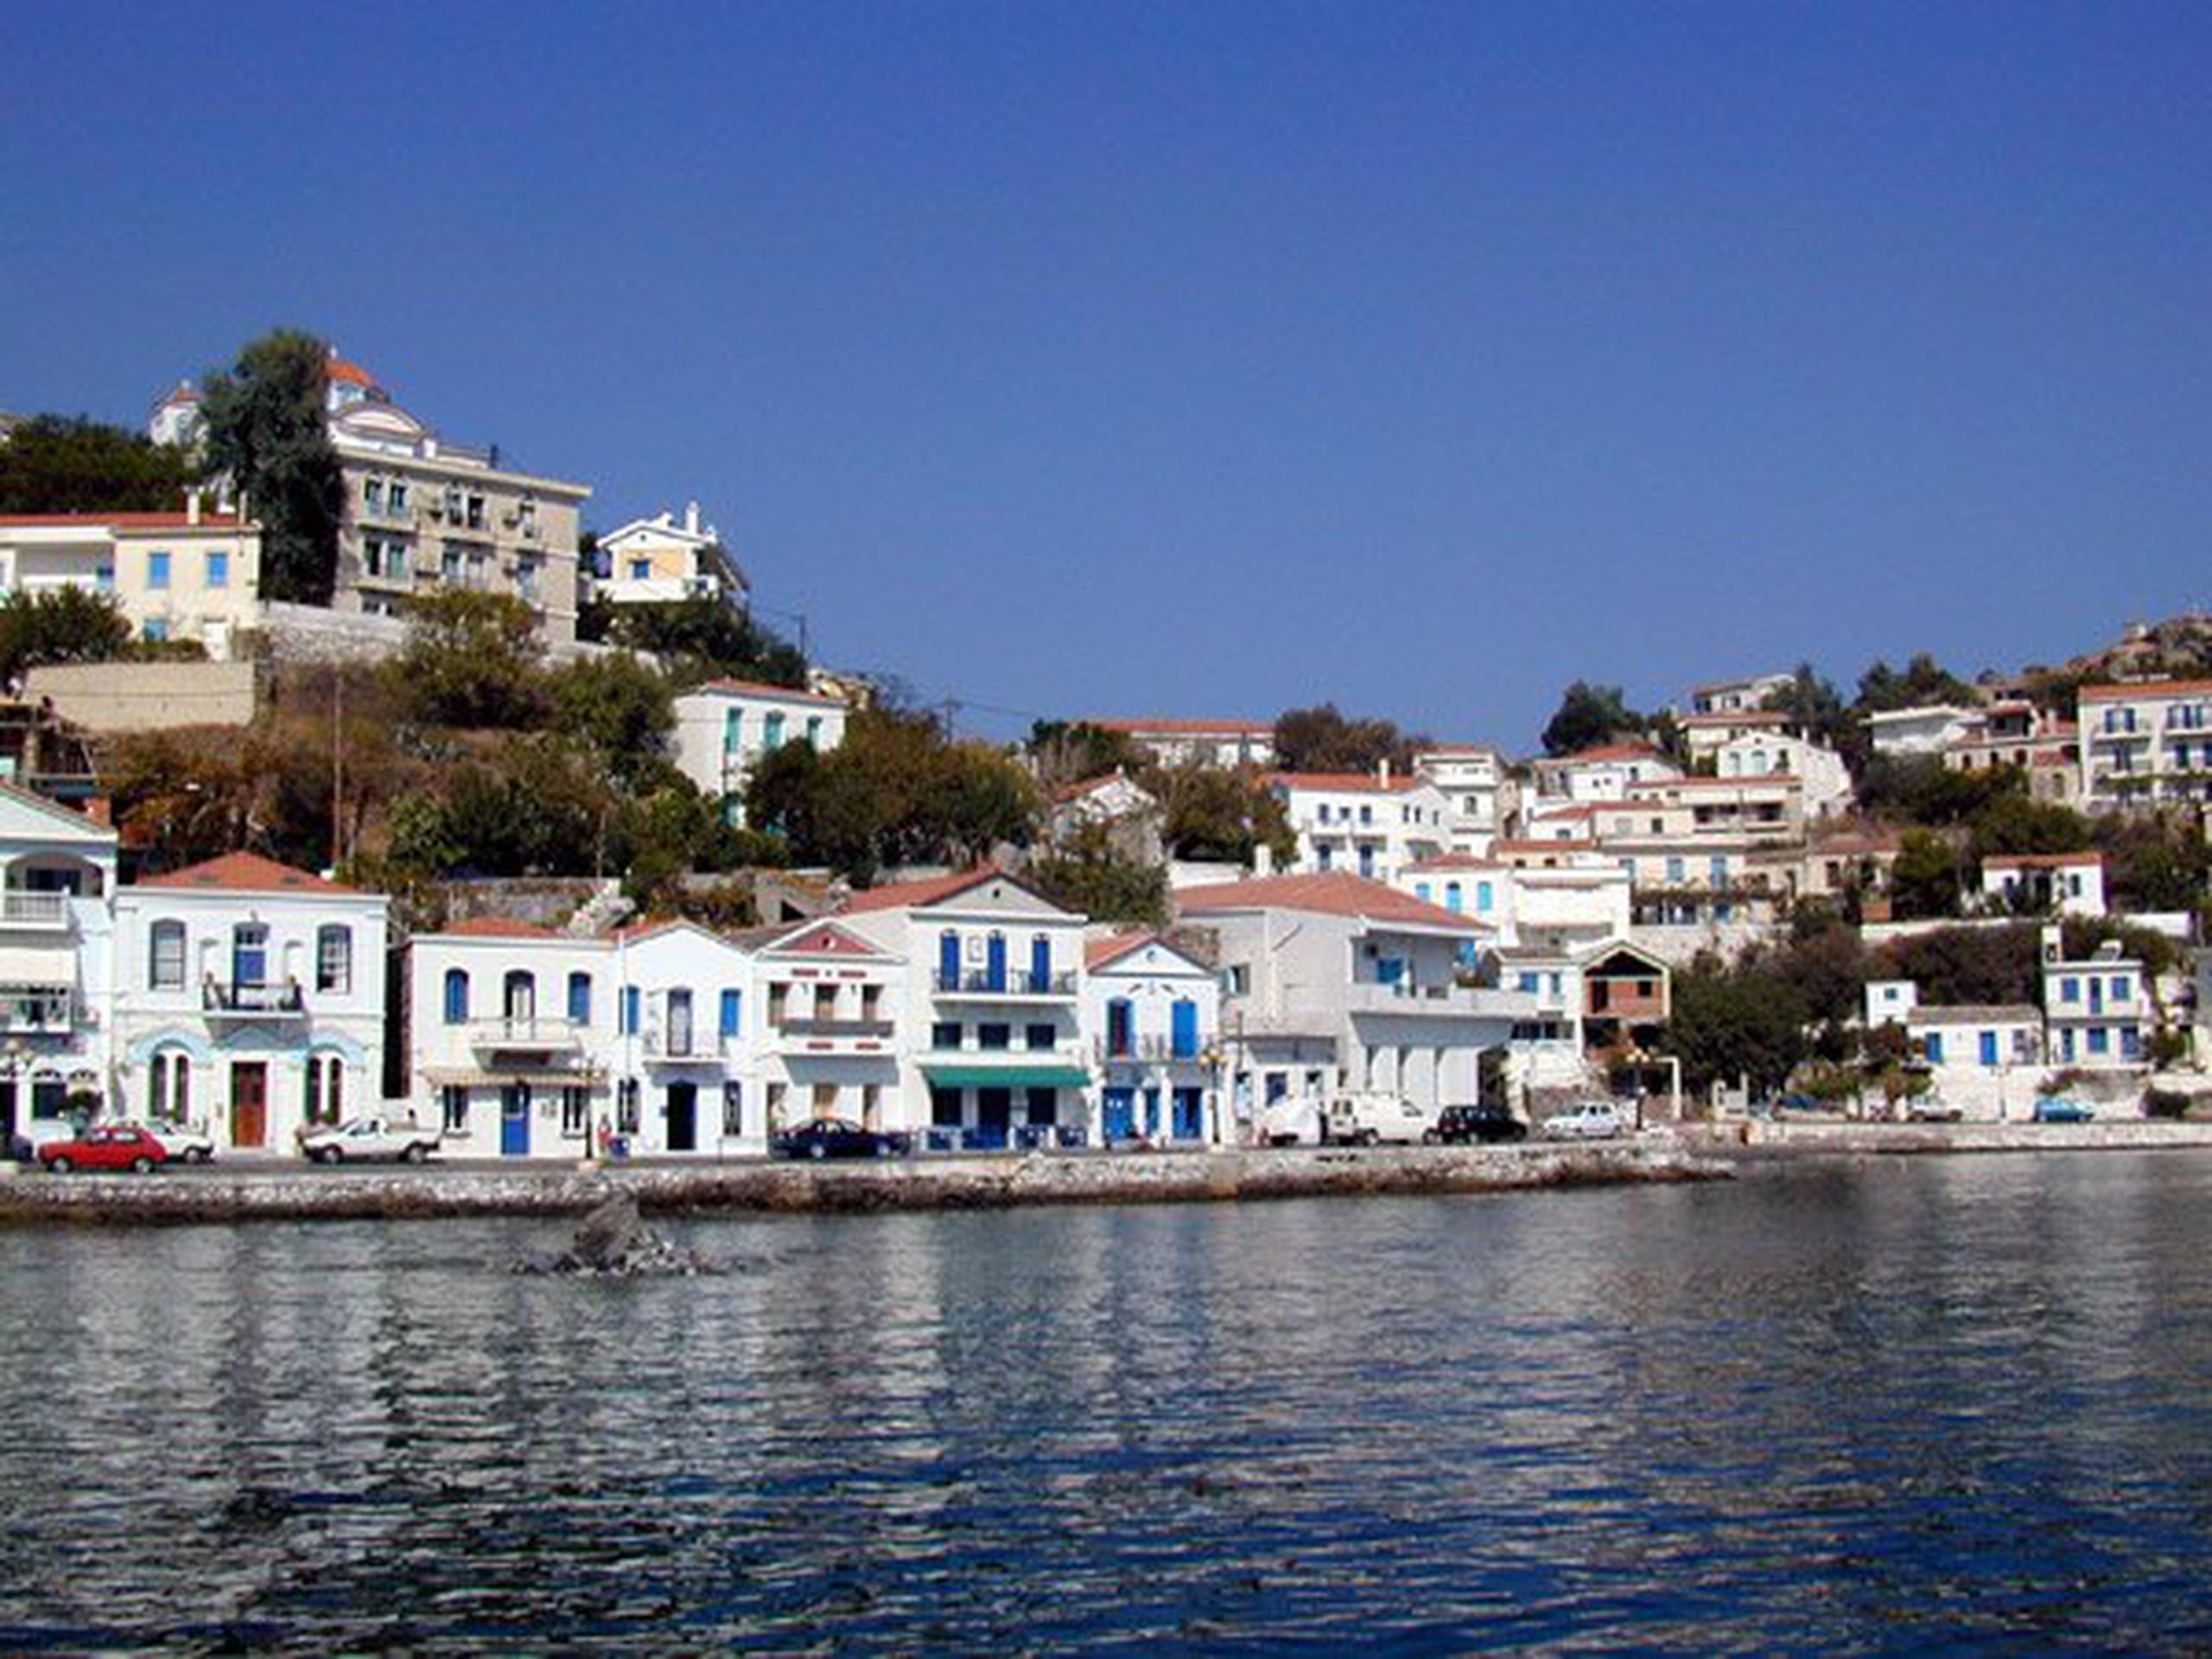 Investigadores griegos descubrieron que el 13 por ciento de la población de Ikaria tenía más de 80 años, en comparación con solo el 1.5% de la población mundial y alrededor del 4% en América del Norte y Europa.